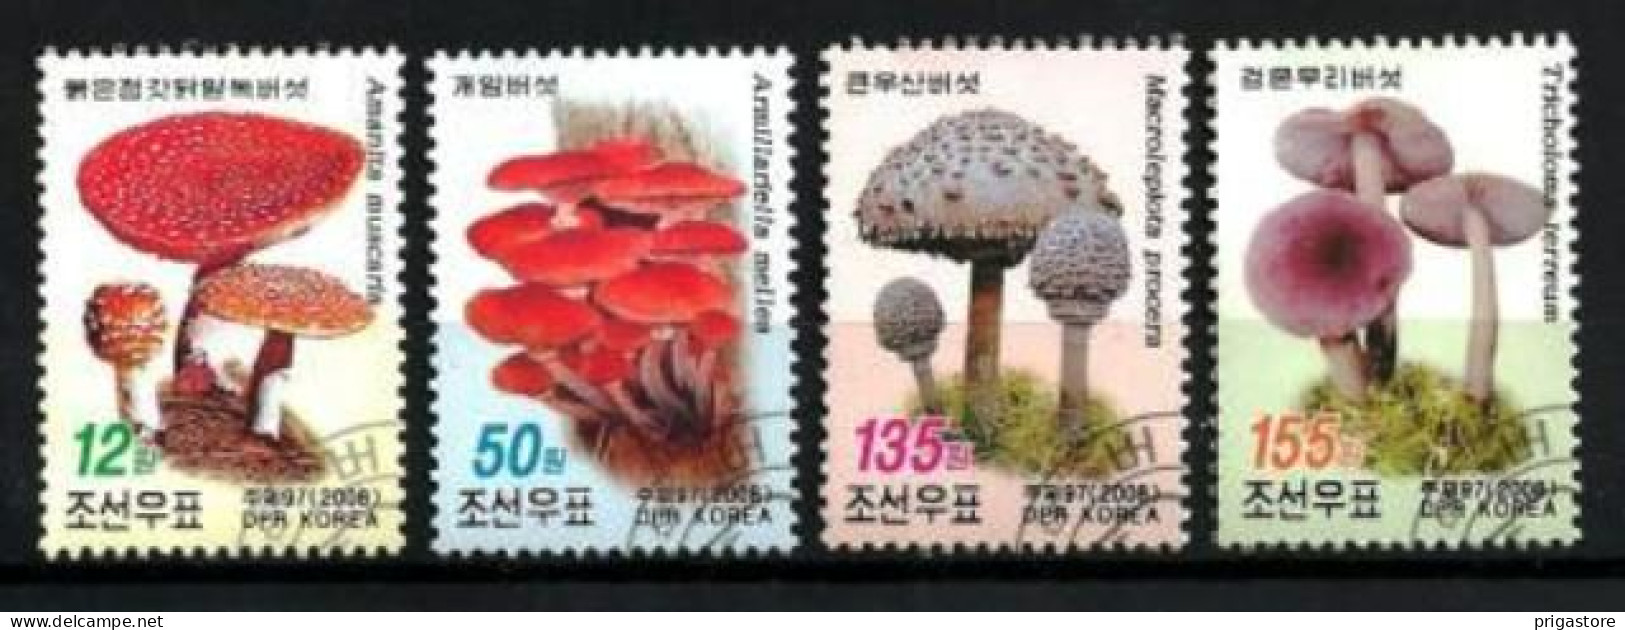 Corée Du Nord 2008 Champignons (9) Yvert N° 3711 à 3714 Oblitérés Used - Corée Du Nord